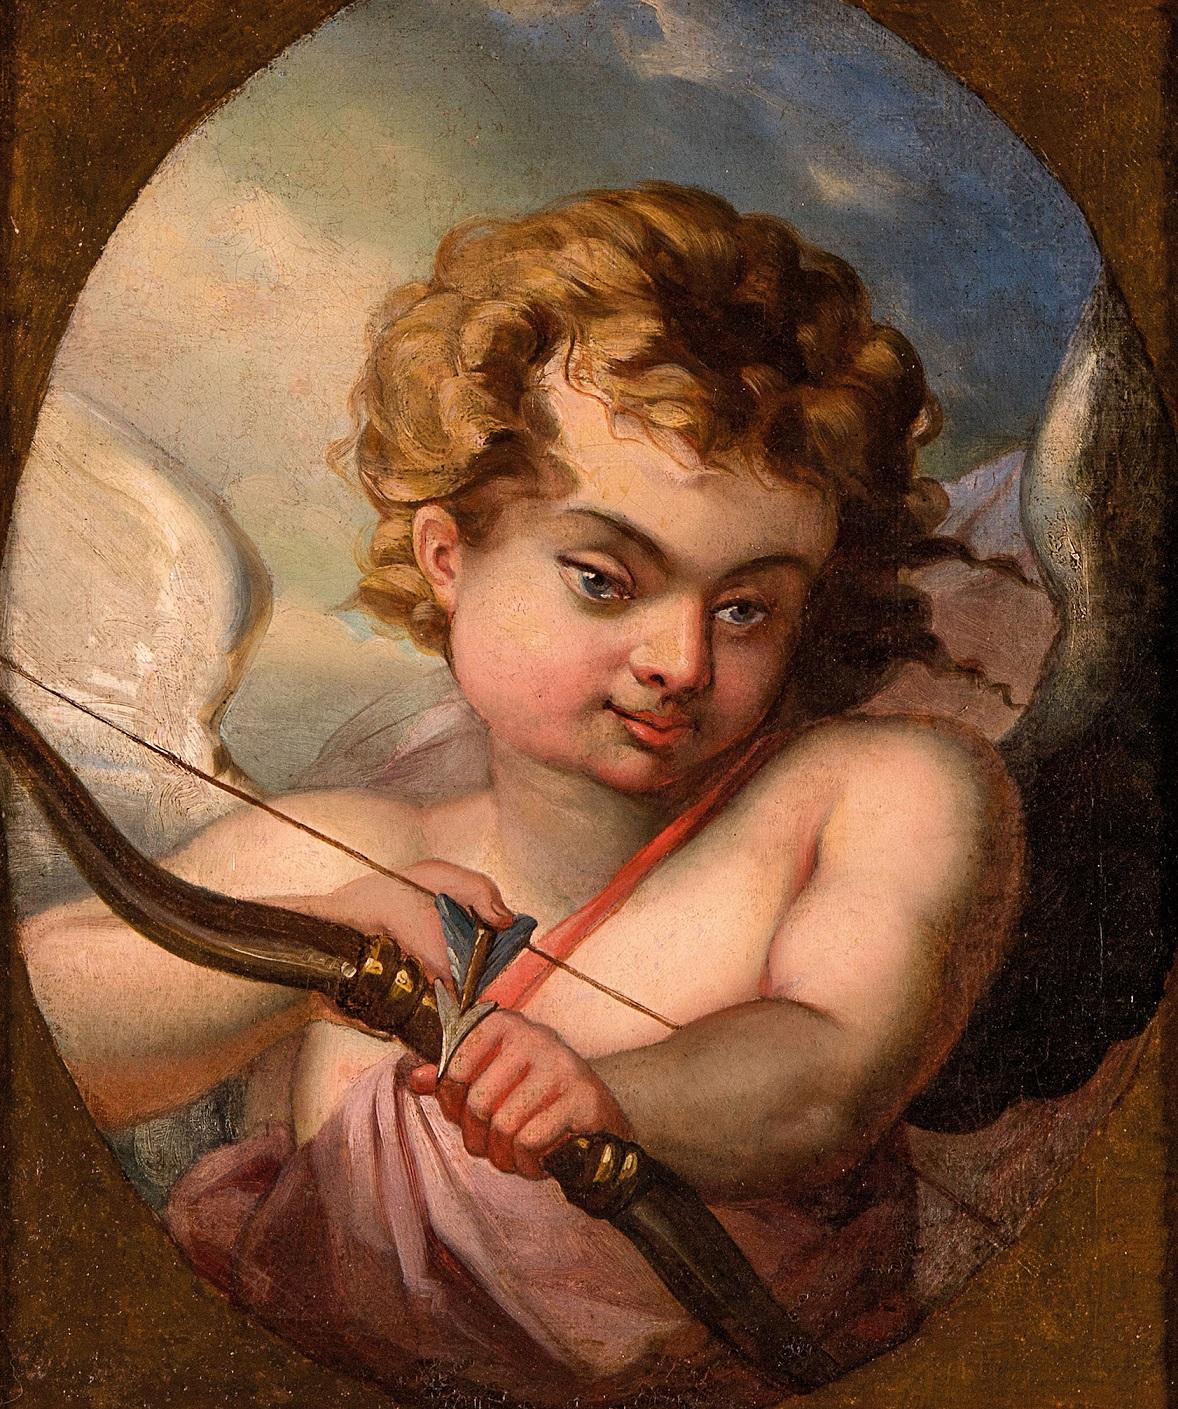 Peinture de Cupidon sur toile, France, néo-classicisme, qualité d'art, 18e siècle